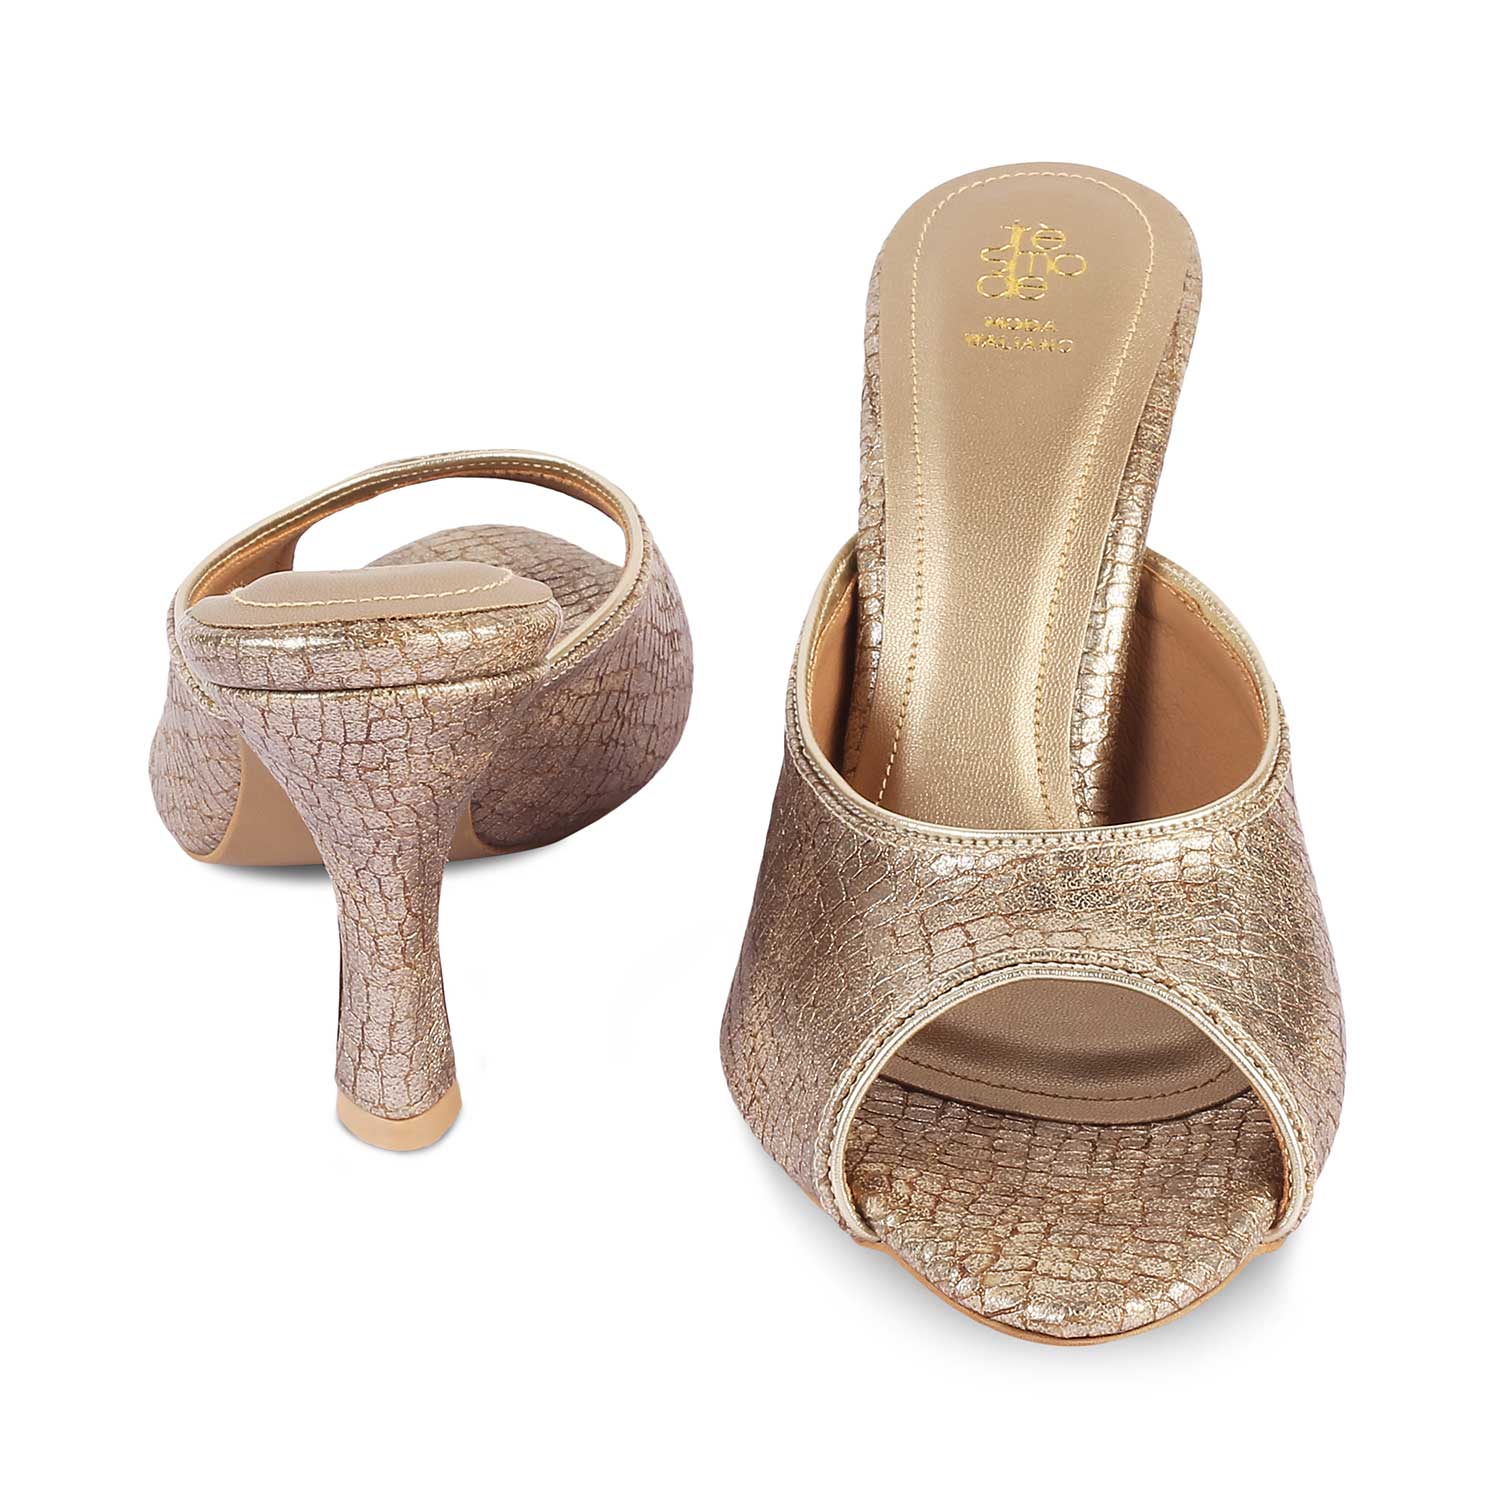 The Viktorika Gold Women's Dress Heel Sandals Tresmode - Tresmode